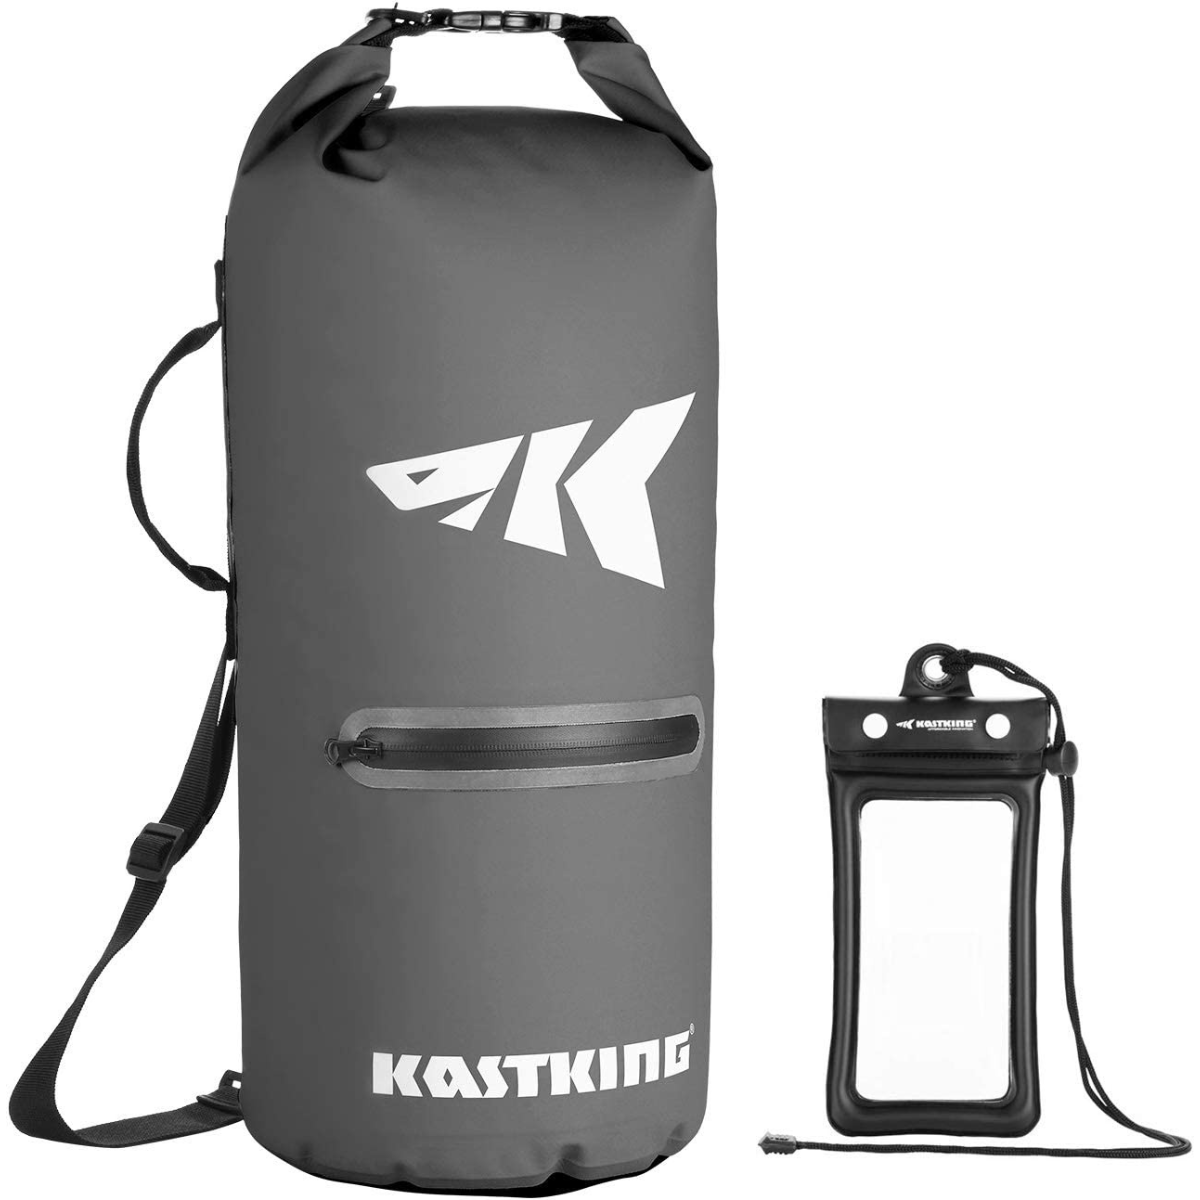 KastKing Cyclone Dry Bag - Best Waterproof Dry Bag